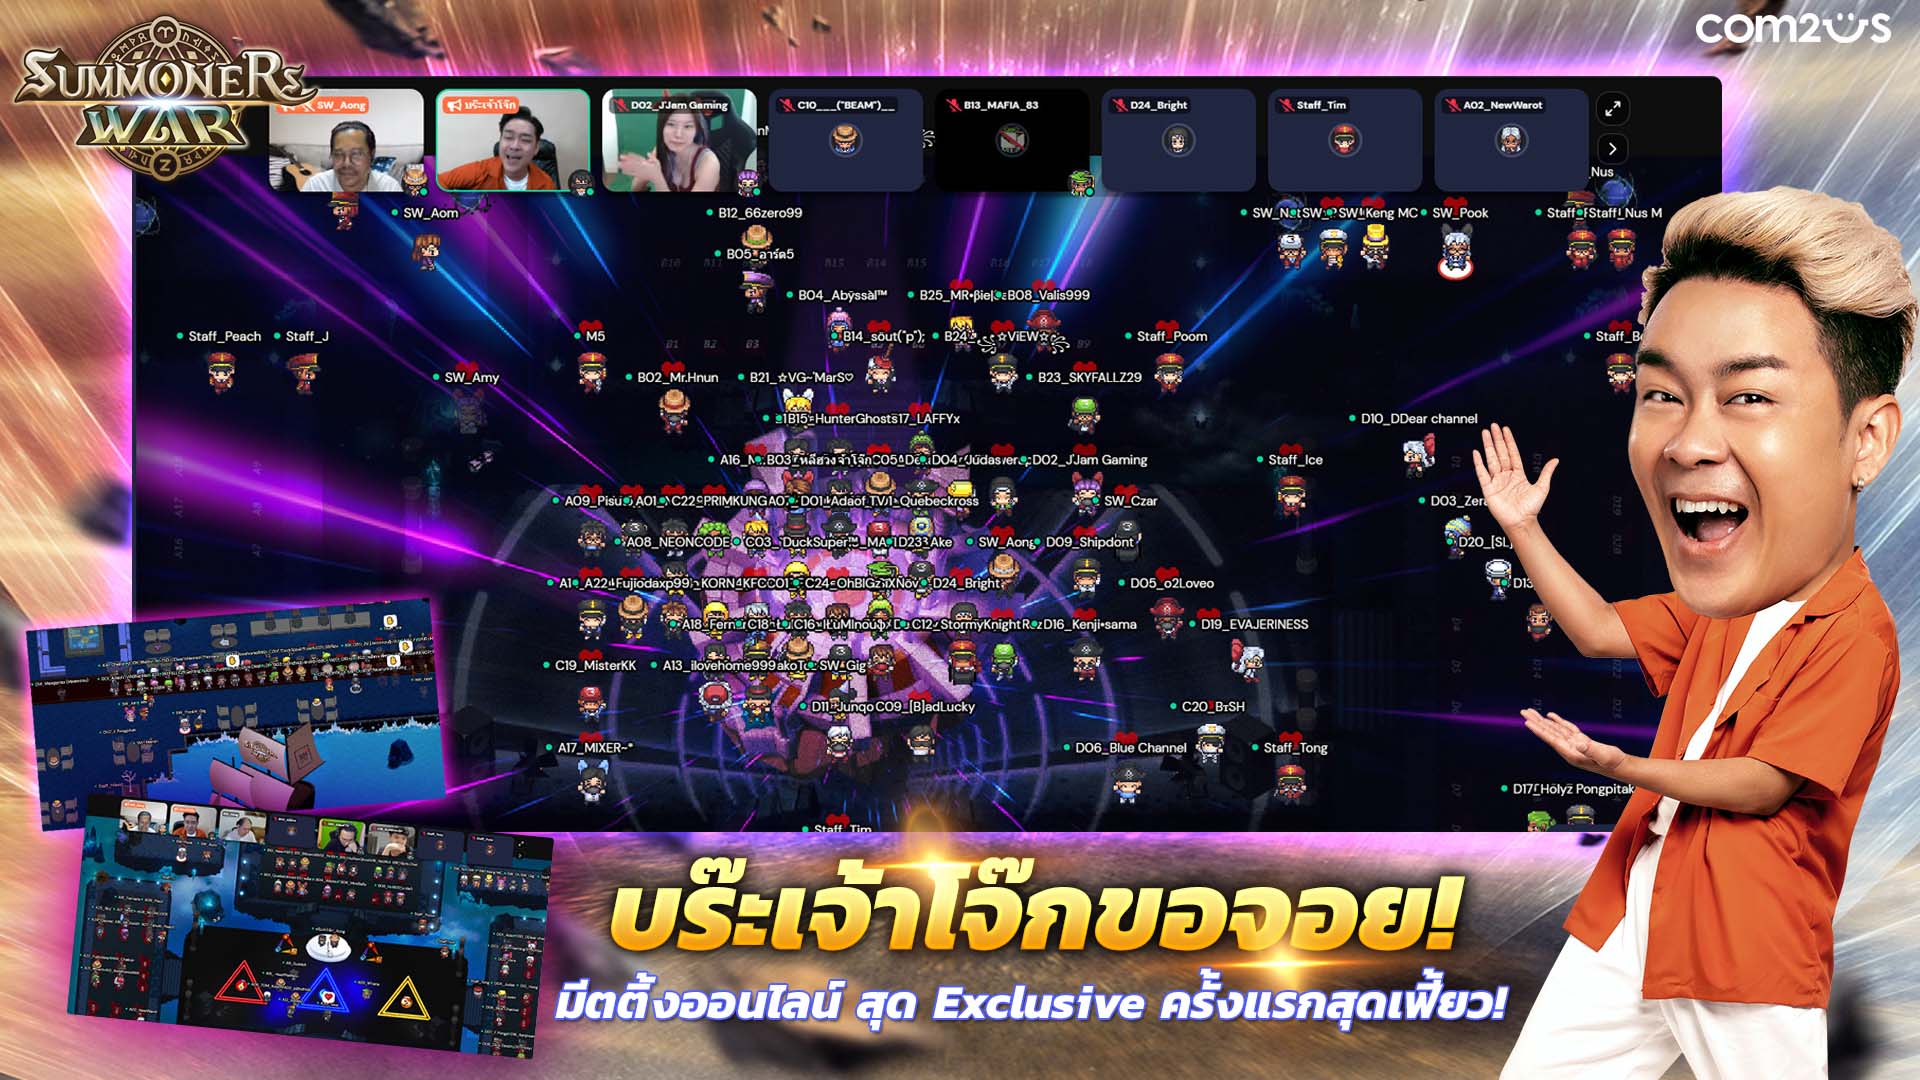 'บร๊ะเจ้าโจ๊ก' ขอจอย !! มีตติ้งทิพย์ Exclusive Online สุดปังของ Summoners War Thailand